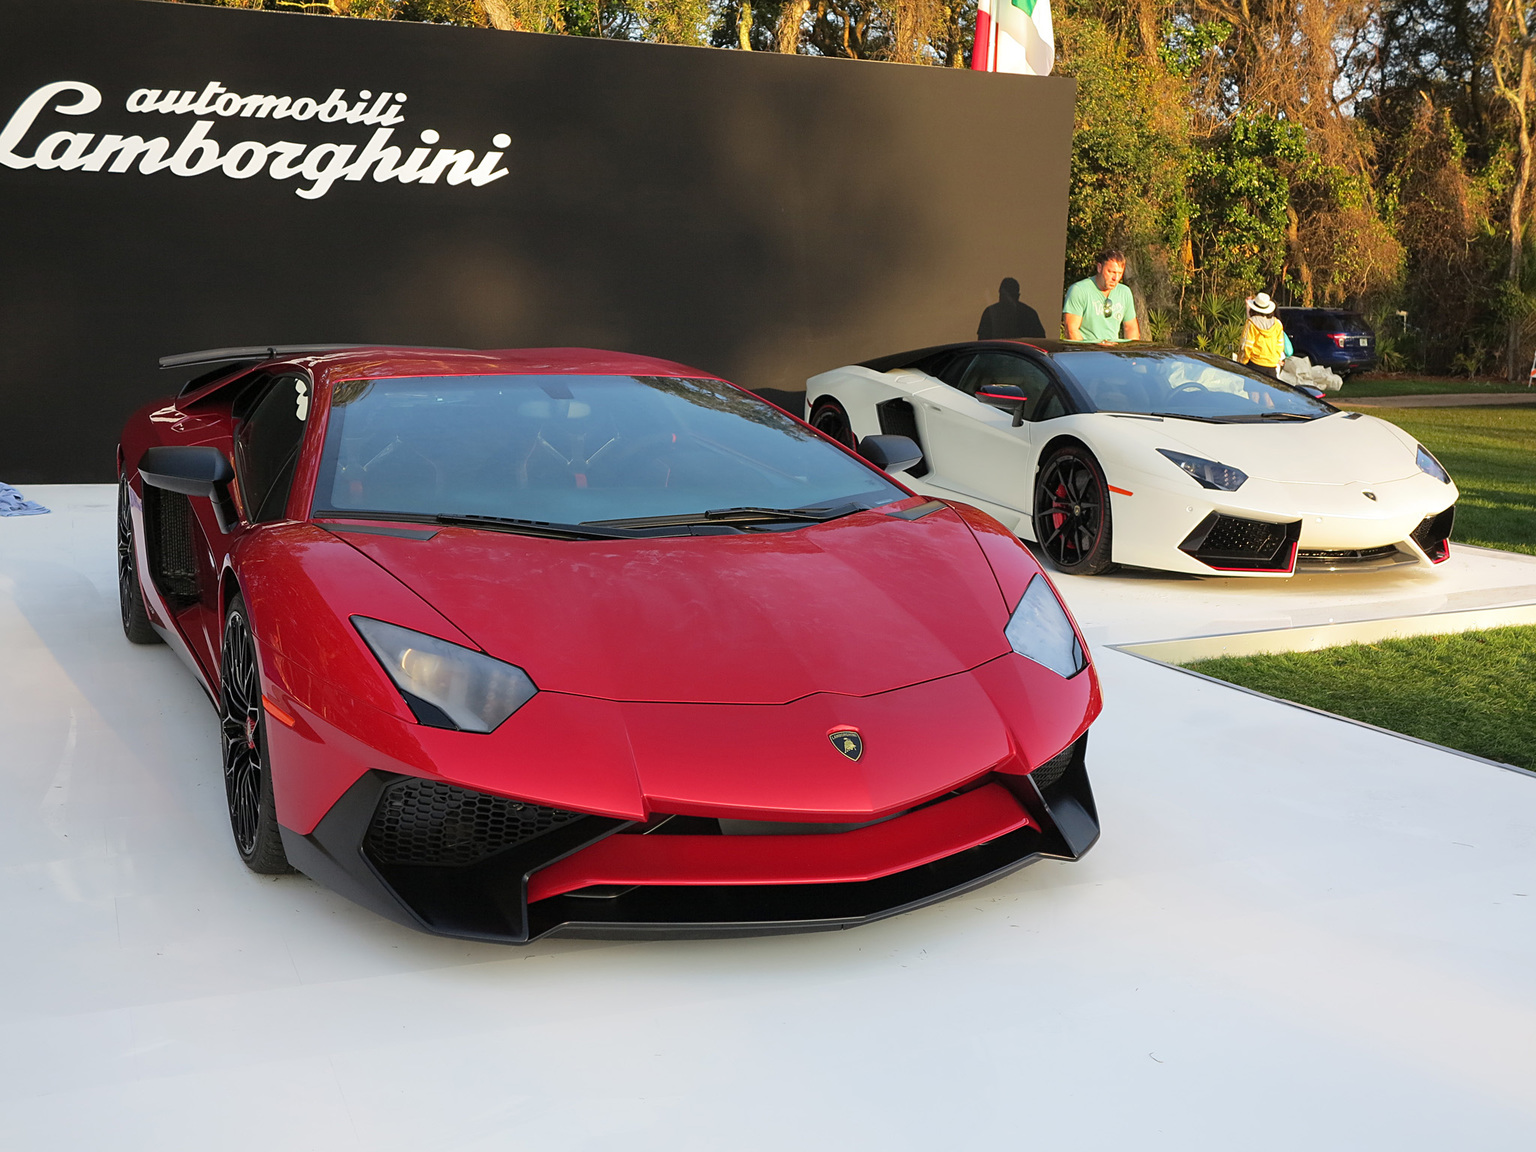 2015 Lamborghini Aventador LP 750-4 Superveloce Gallery